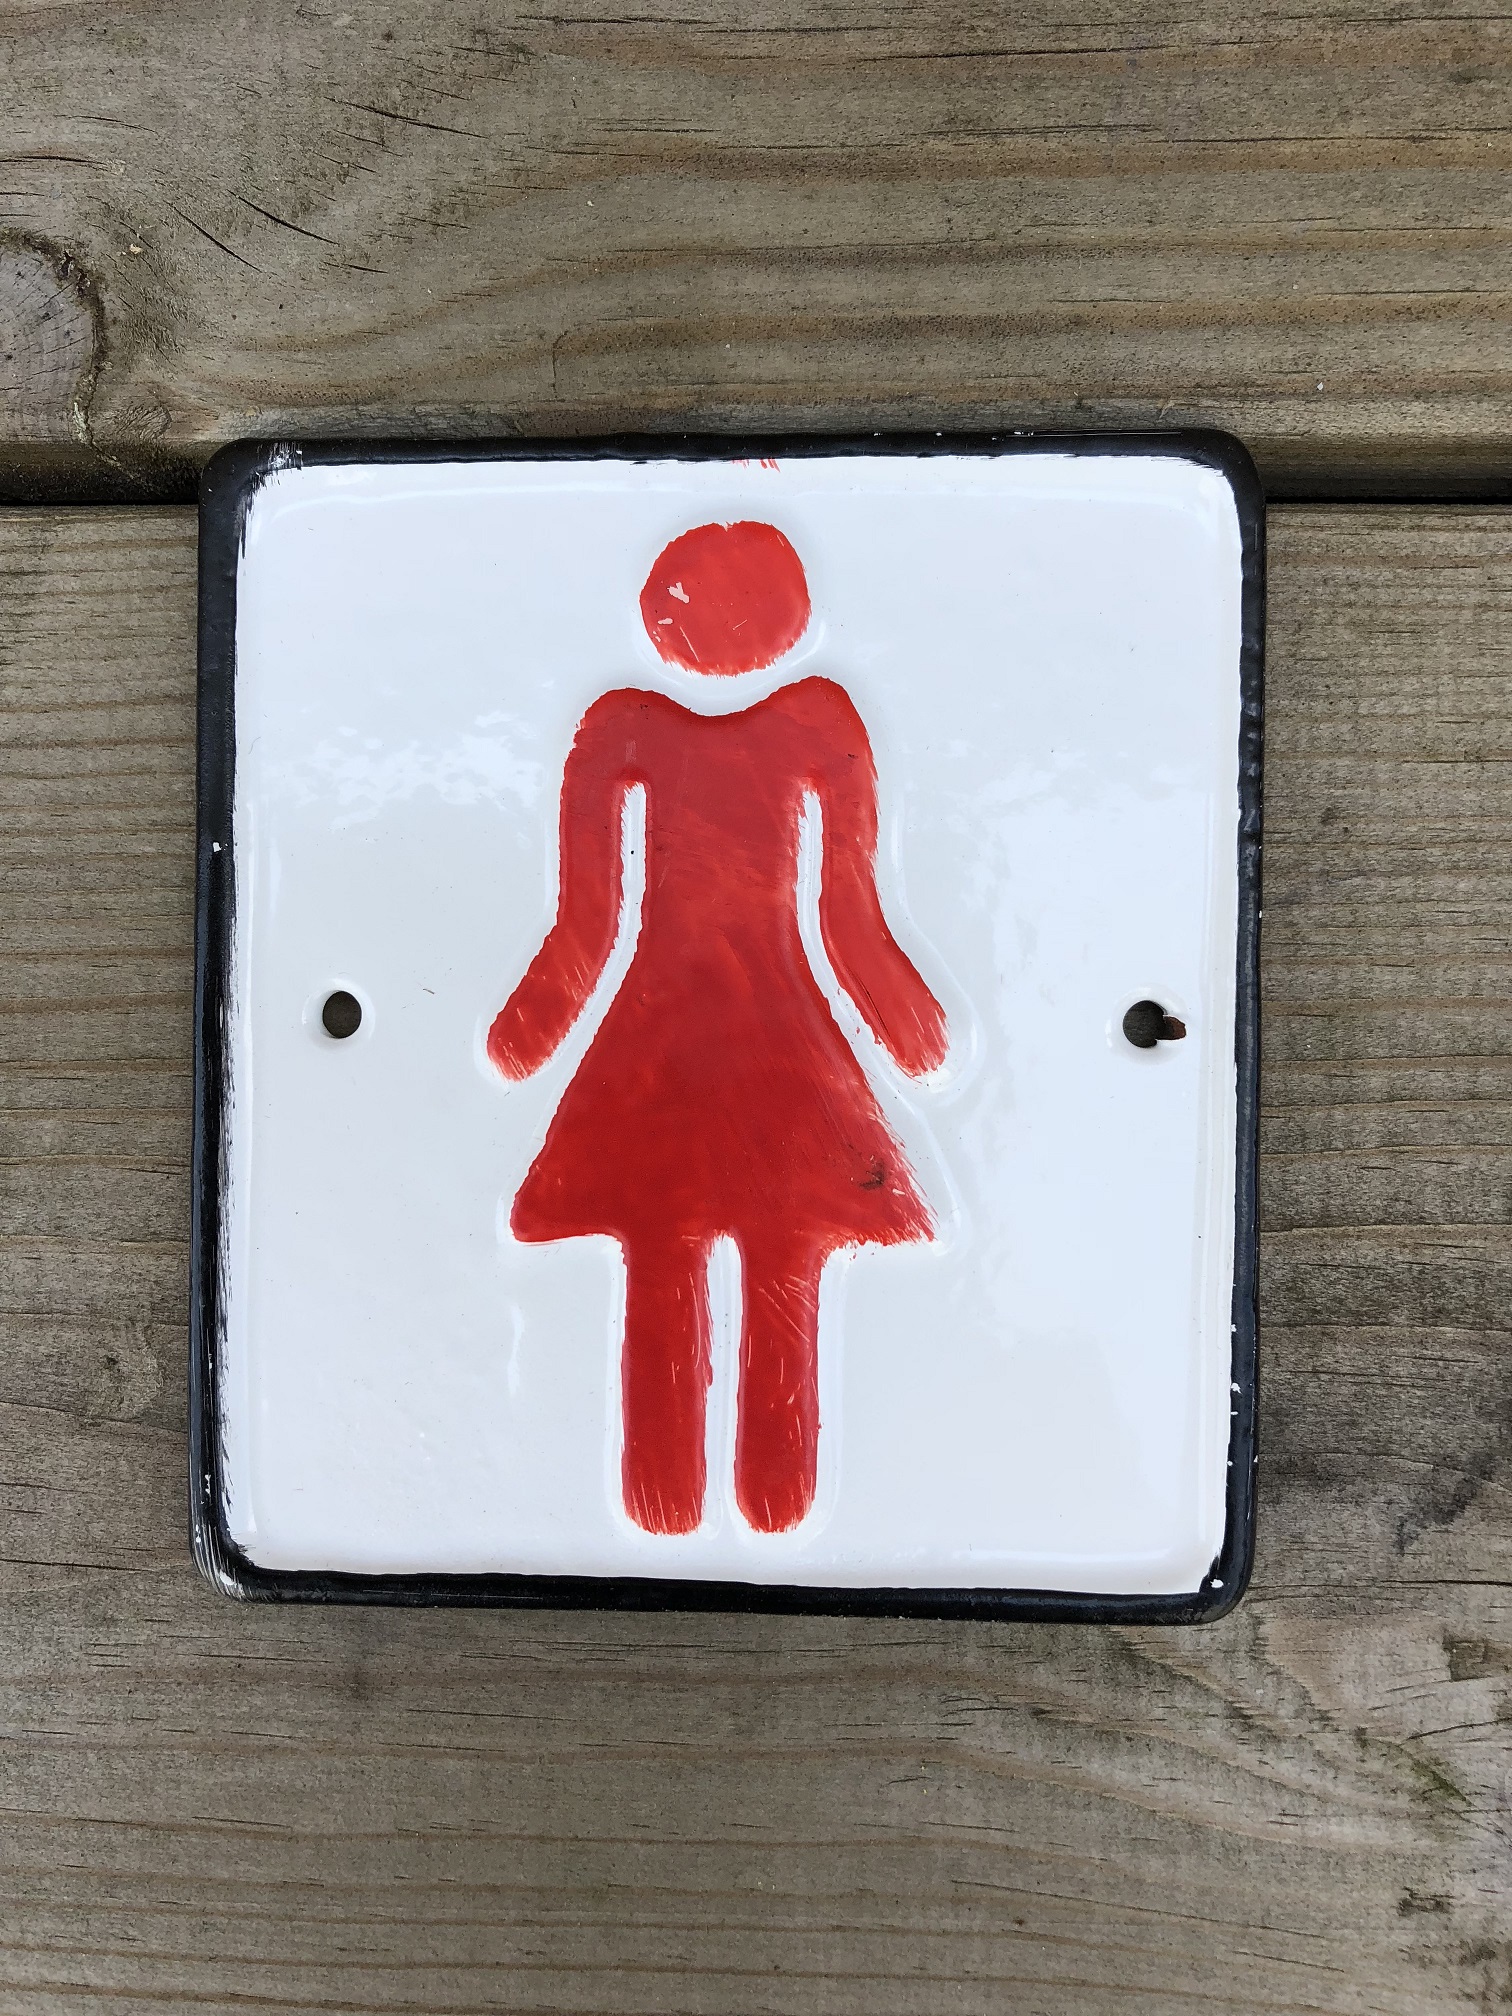 Schildersatz für die Toilettentür, Gusseisen lackiert, Mann + Frau